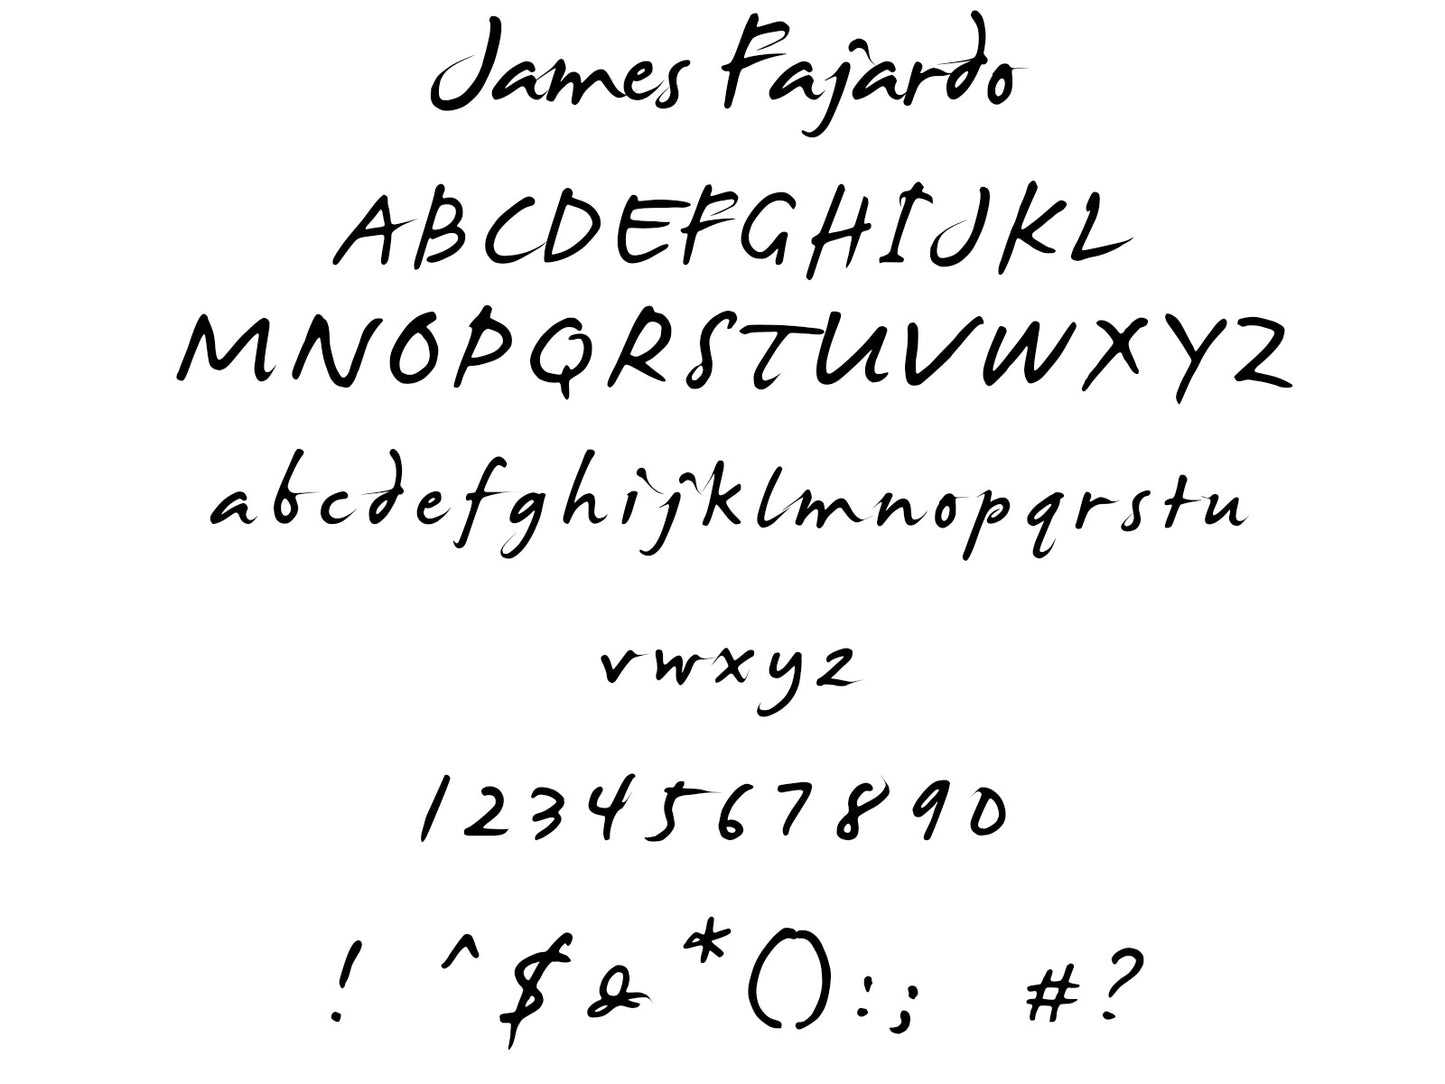 Custom Signature Guitar Decal in James Fajardo Font